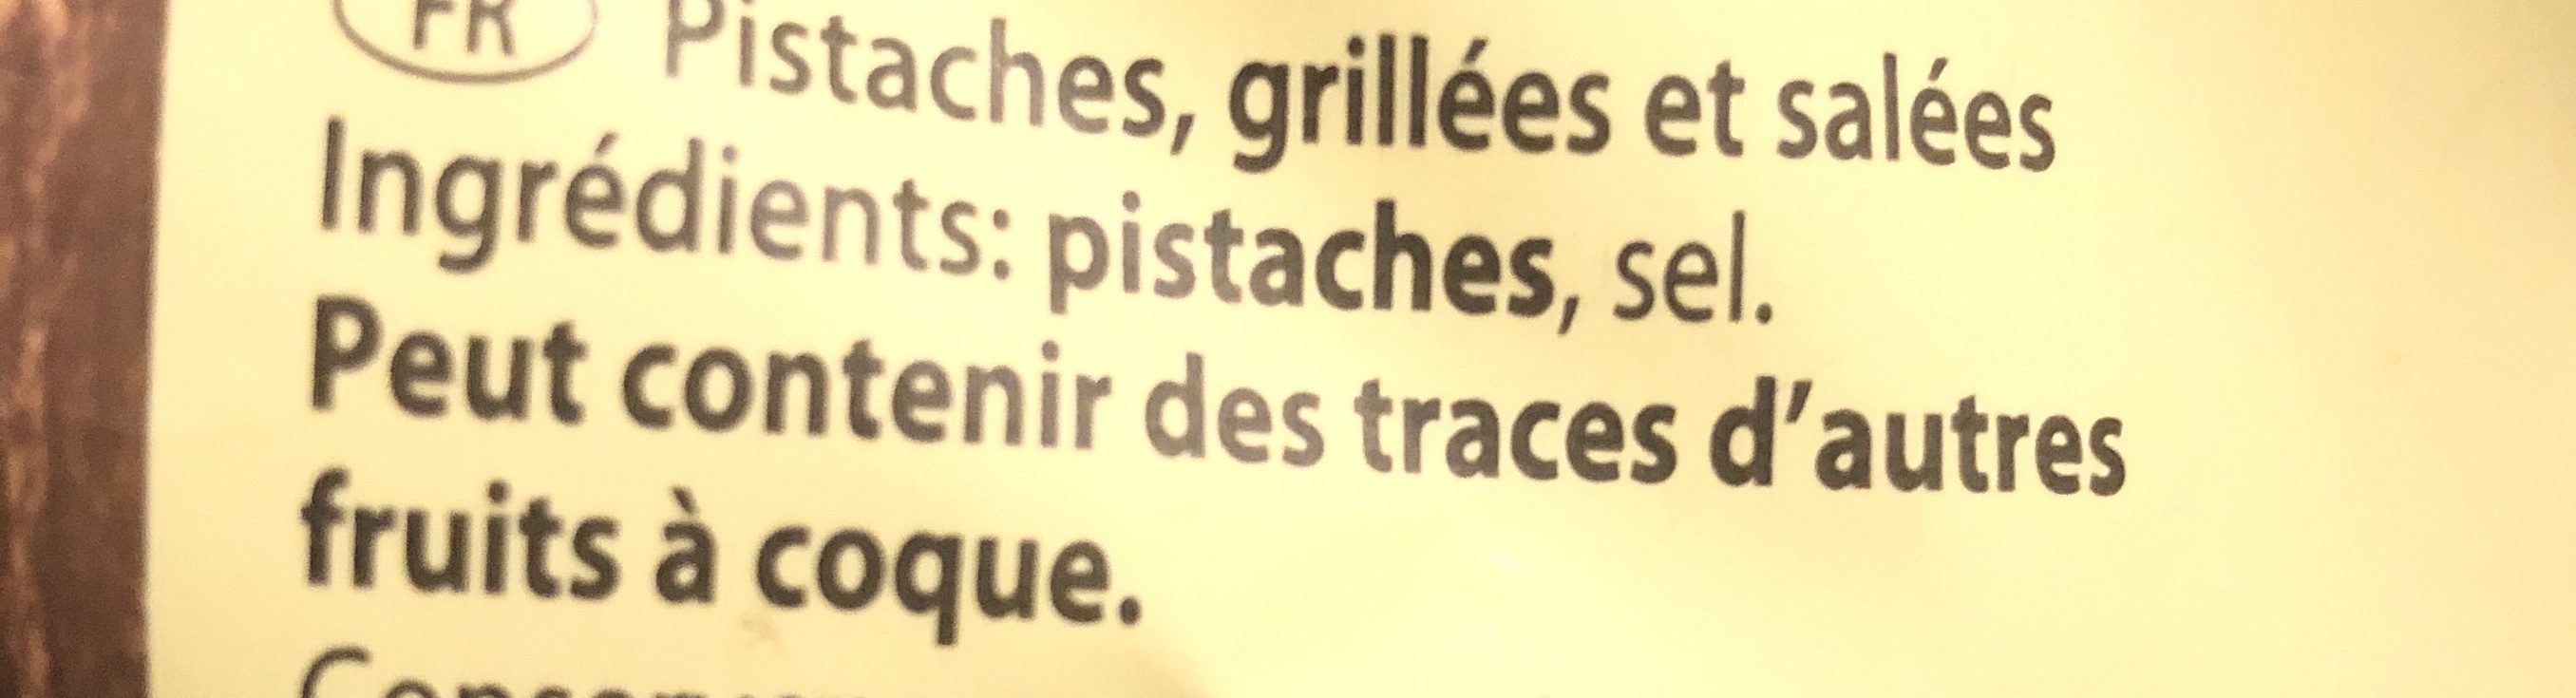 Pistaches Grillées Et Salées, - Ingrédients